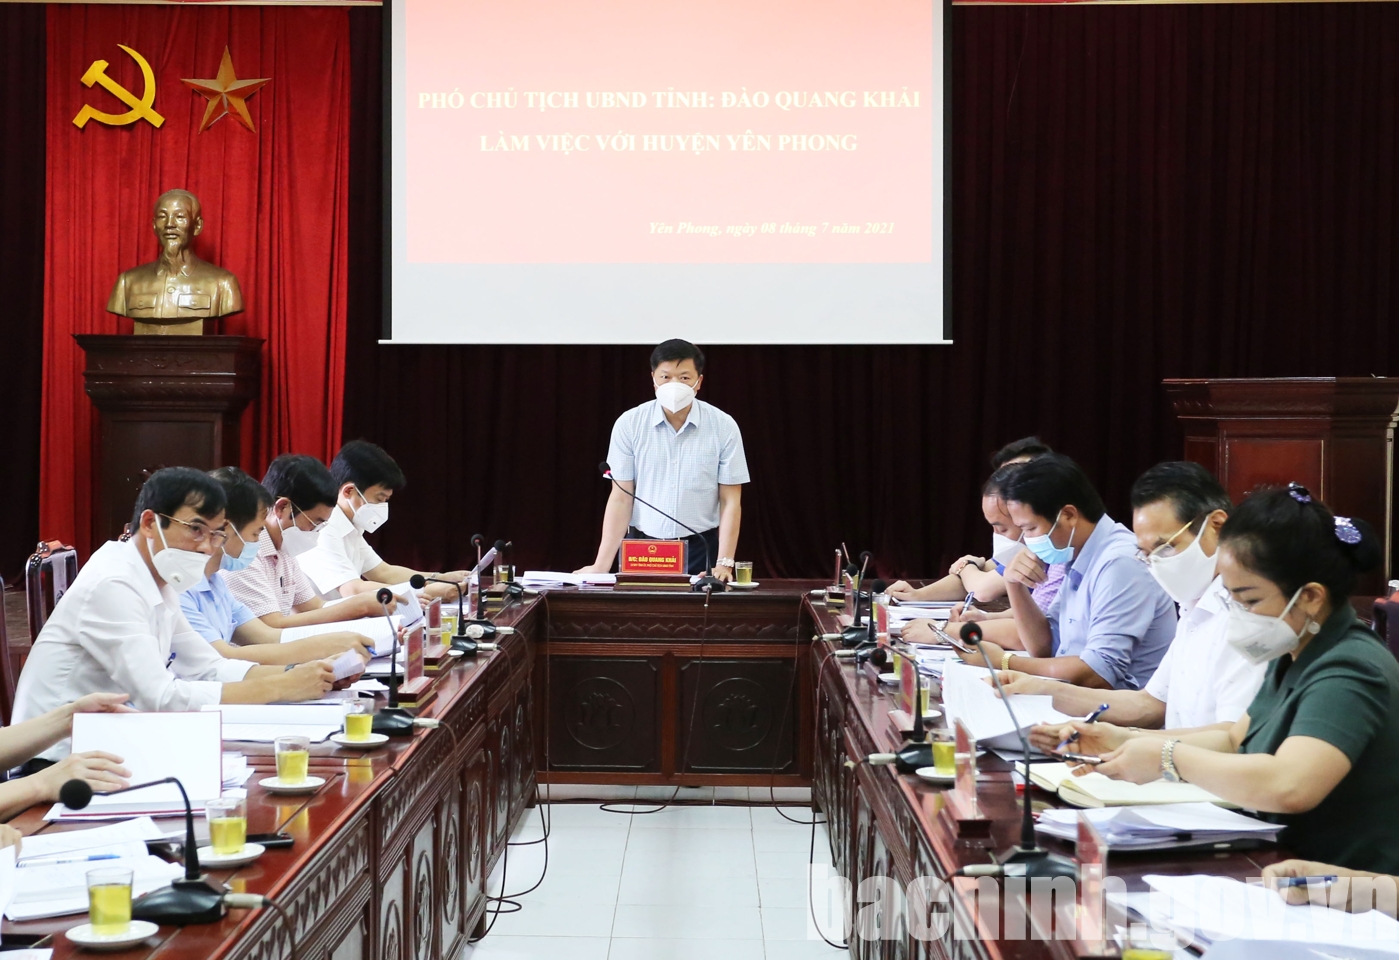 Phó Chủ tịch UBND tỉnh Đào Quang Khải làm việc tại huyện Yên Phong